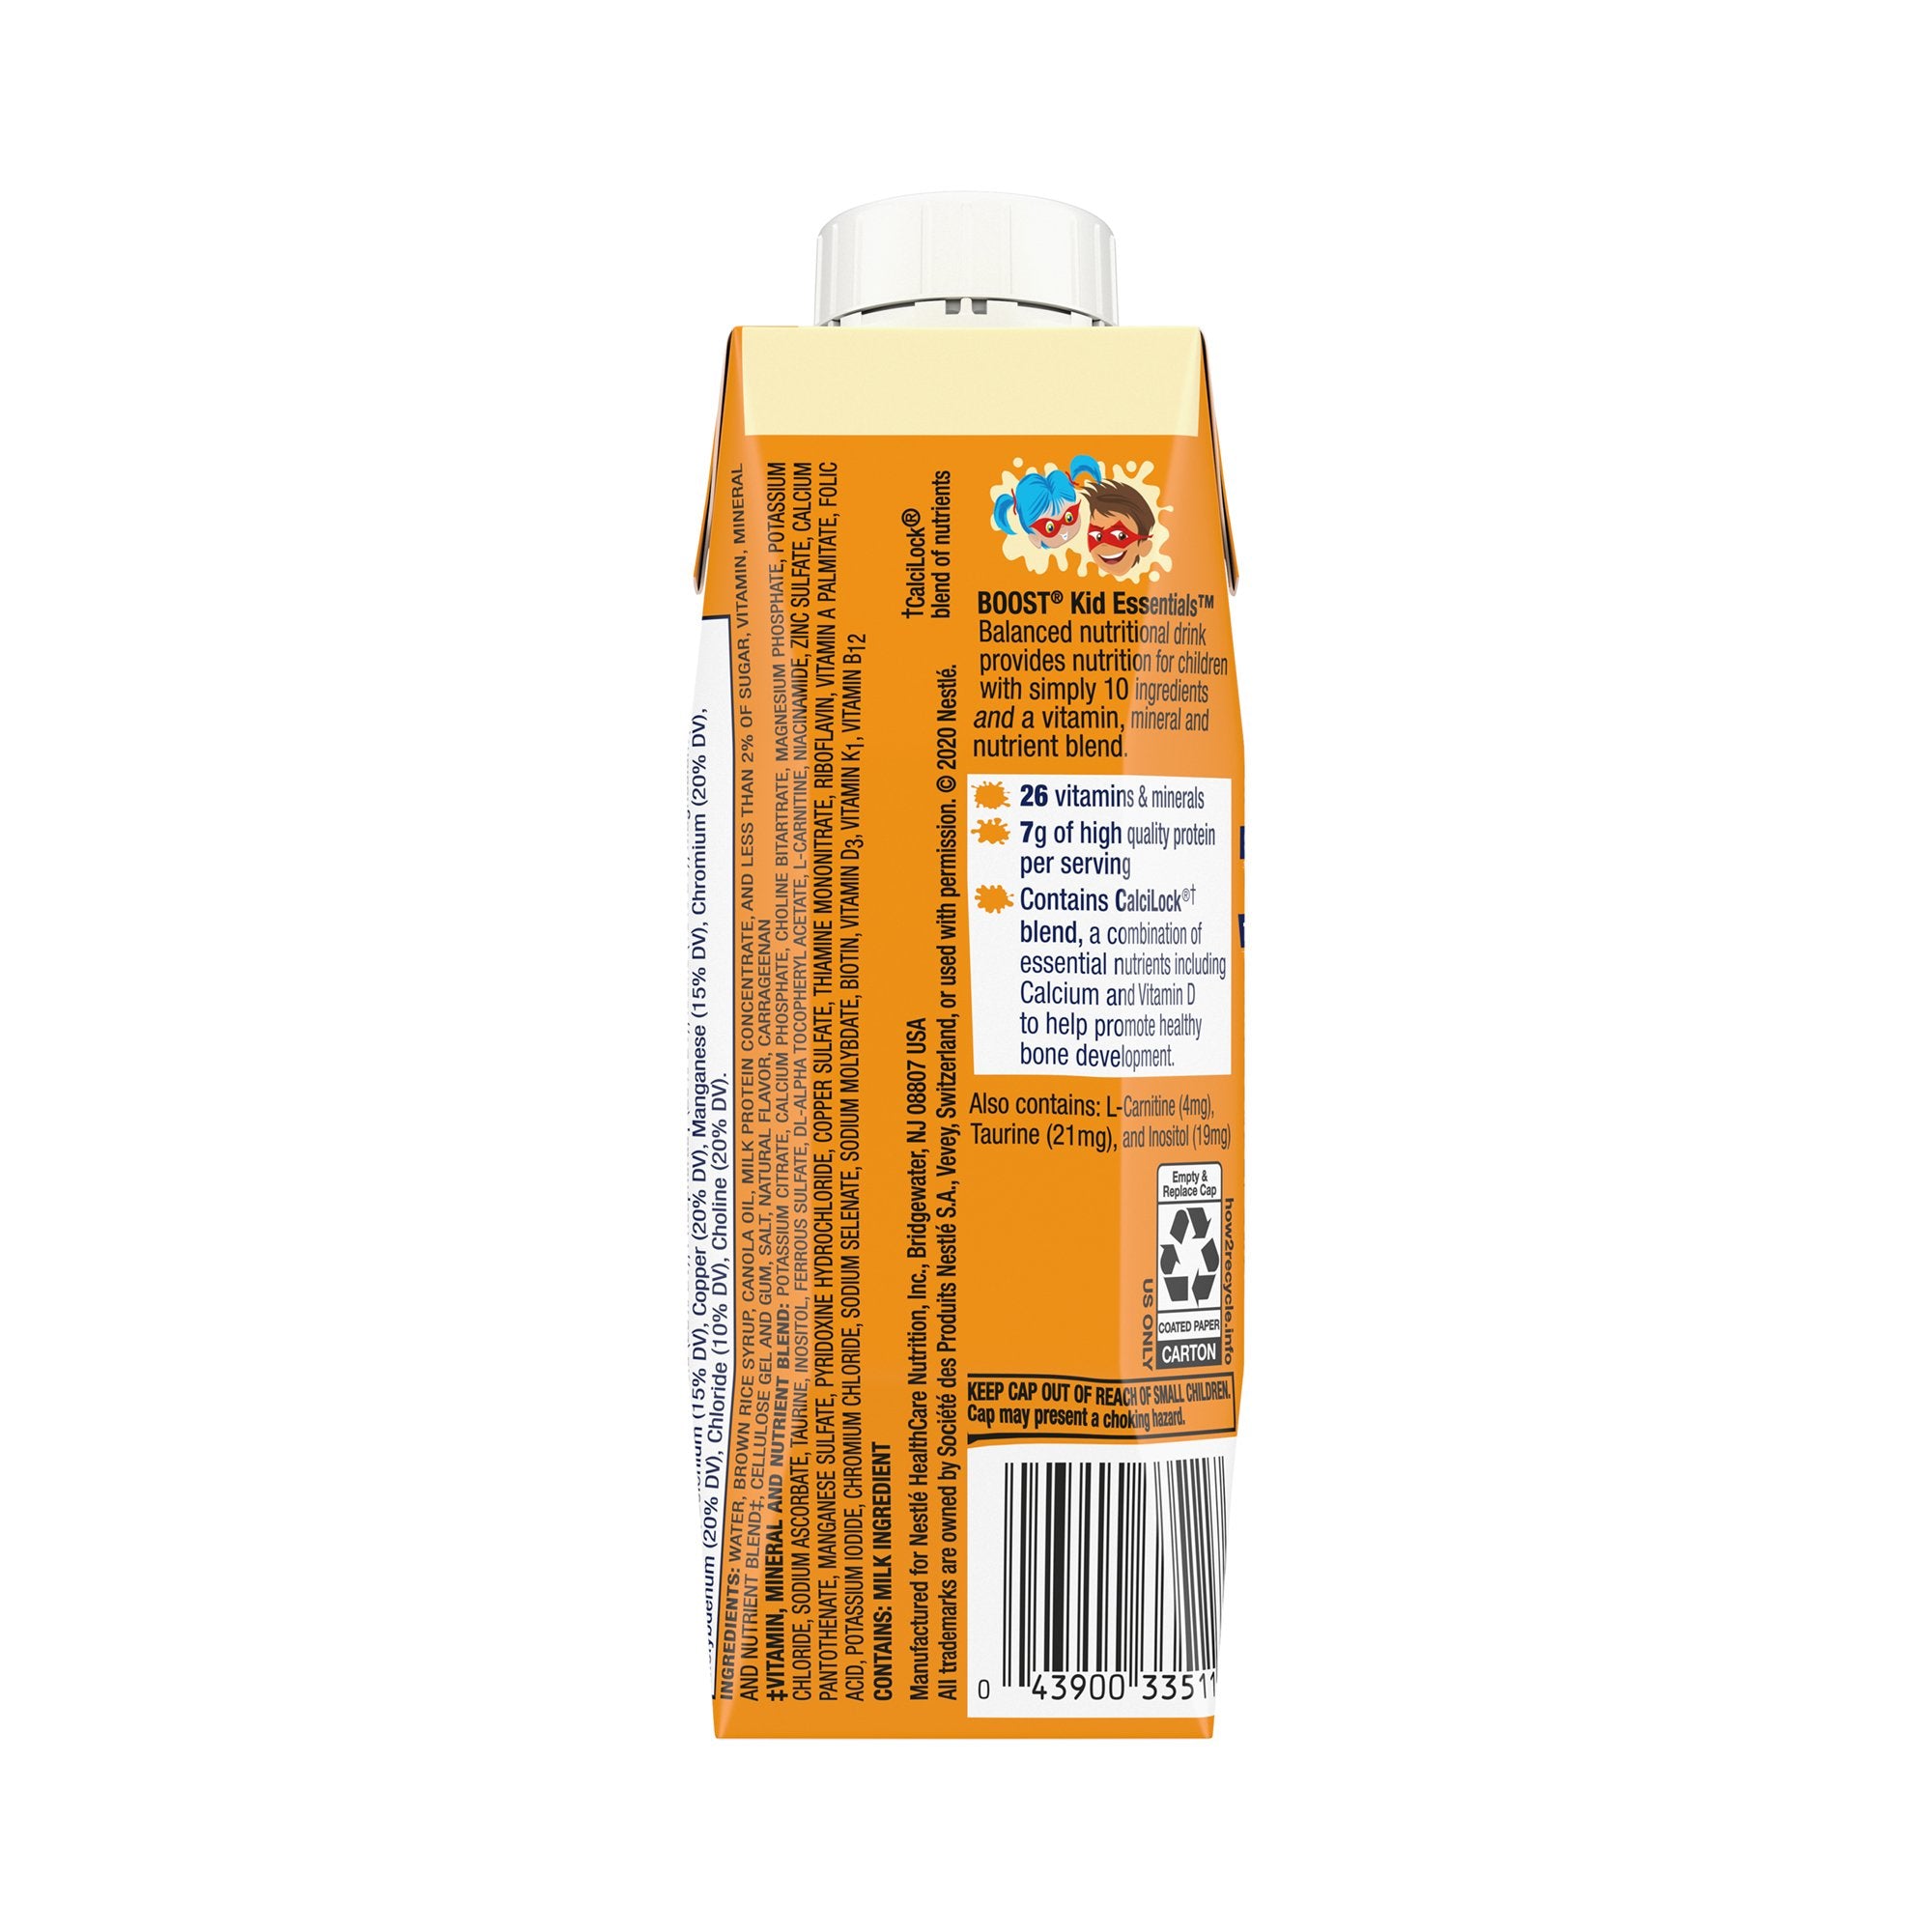 Boost Kid Essentials 1.0 Vanilla Vortex Flavor Oral Supplement, 8 oz (24 Pack)